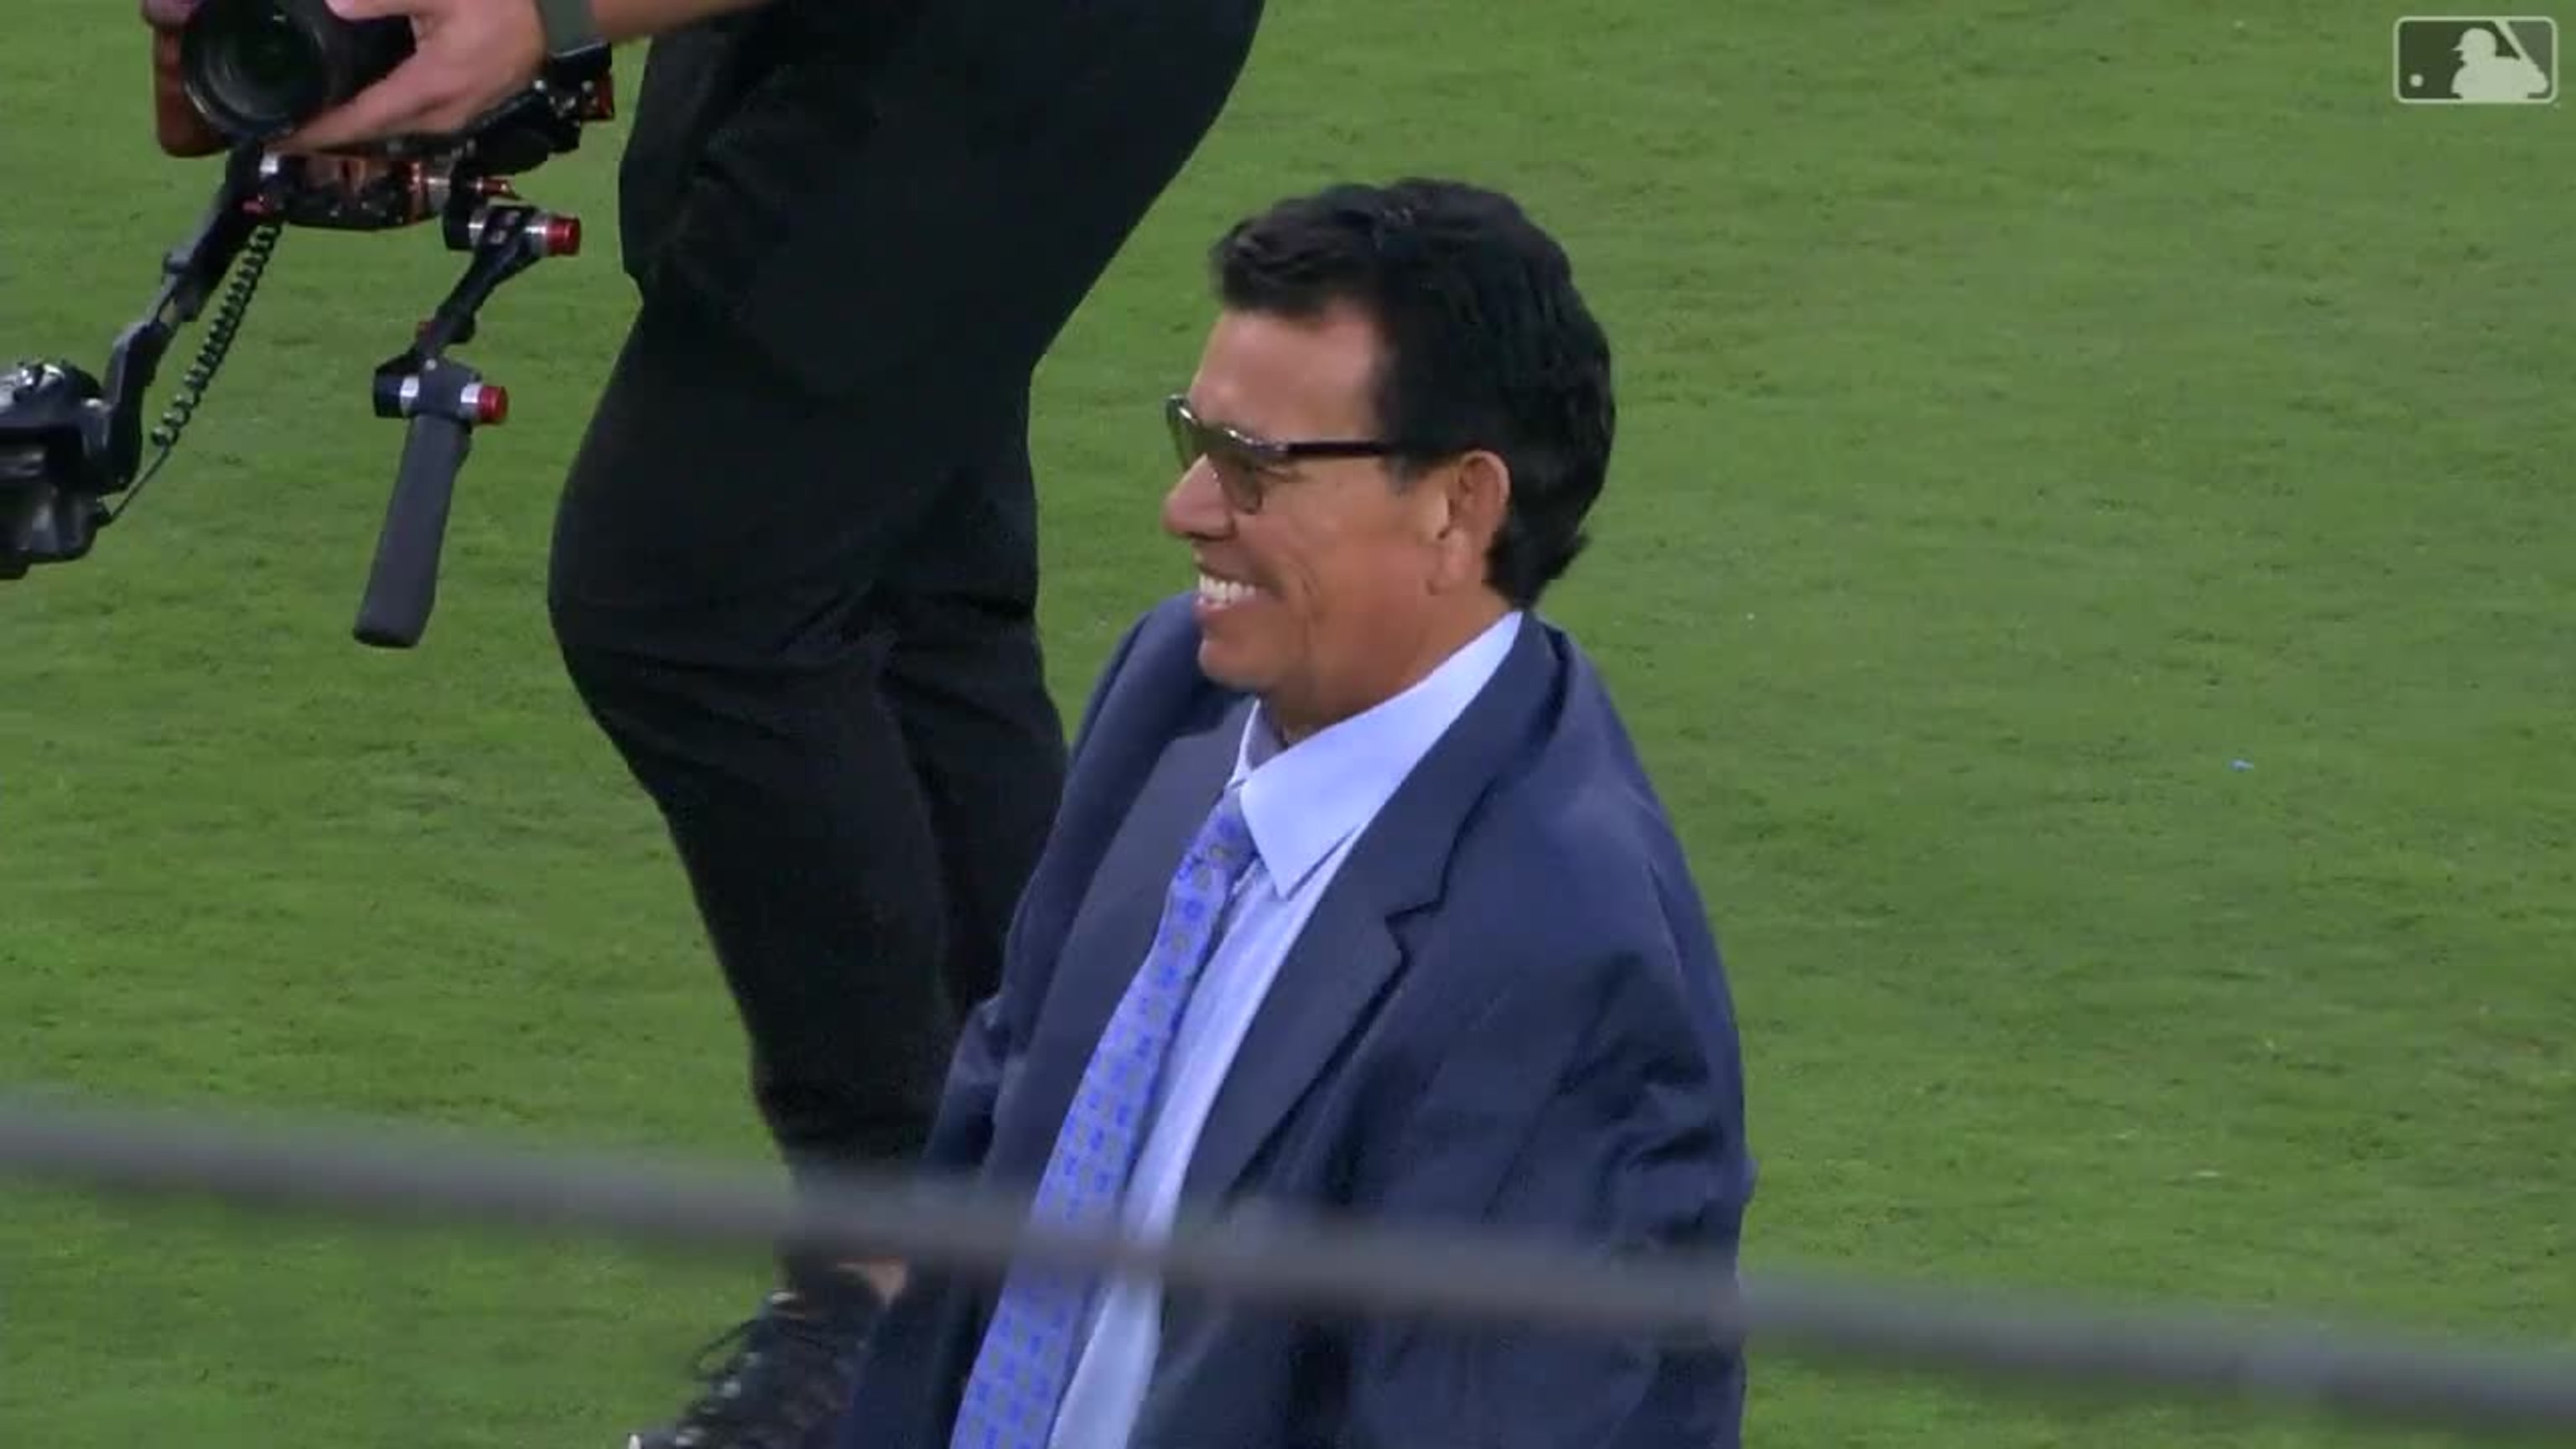 Fernando Valenzuela Addresses Dodgers Not Retiring Jersey Number